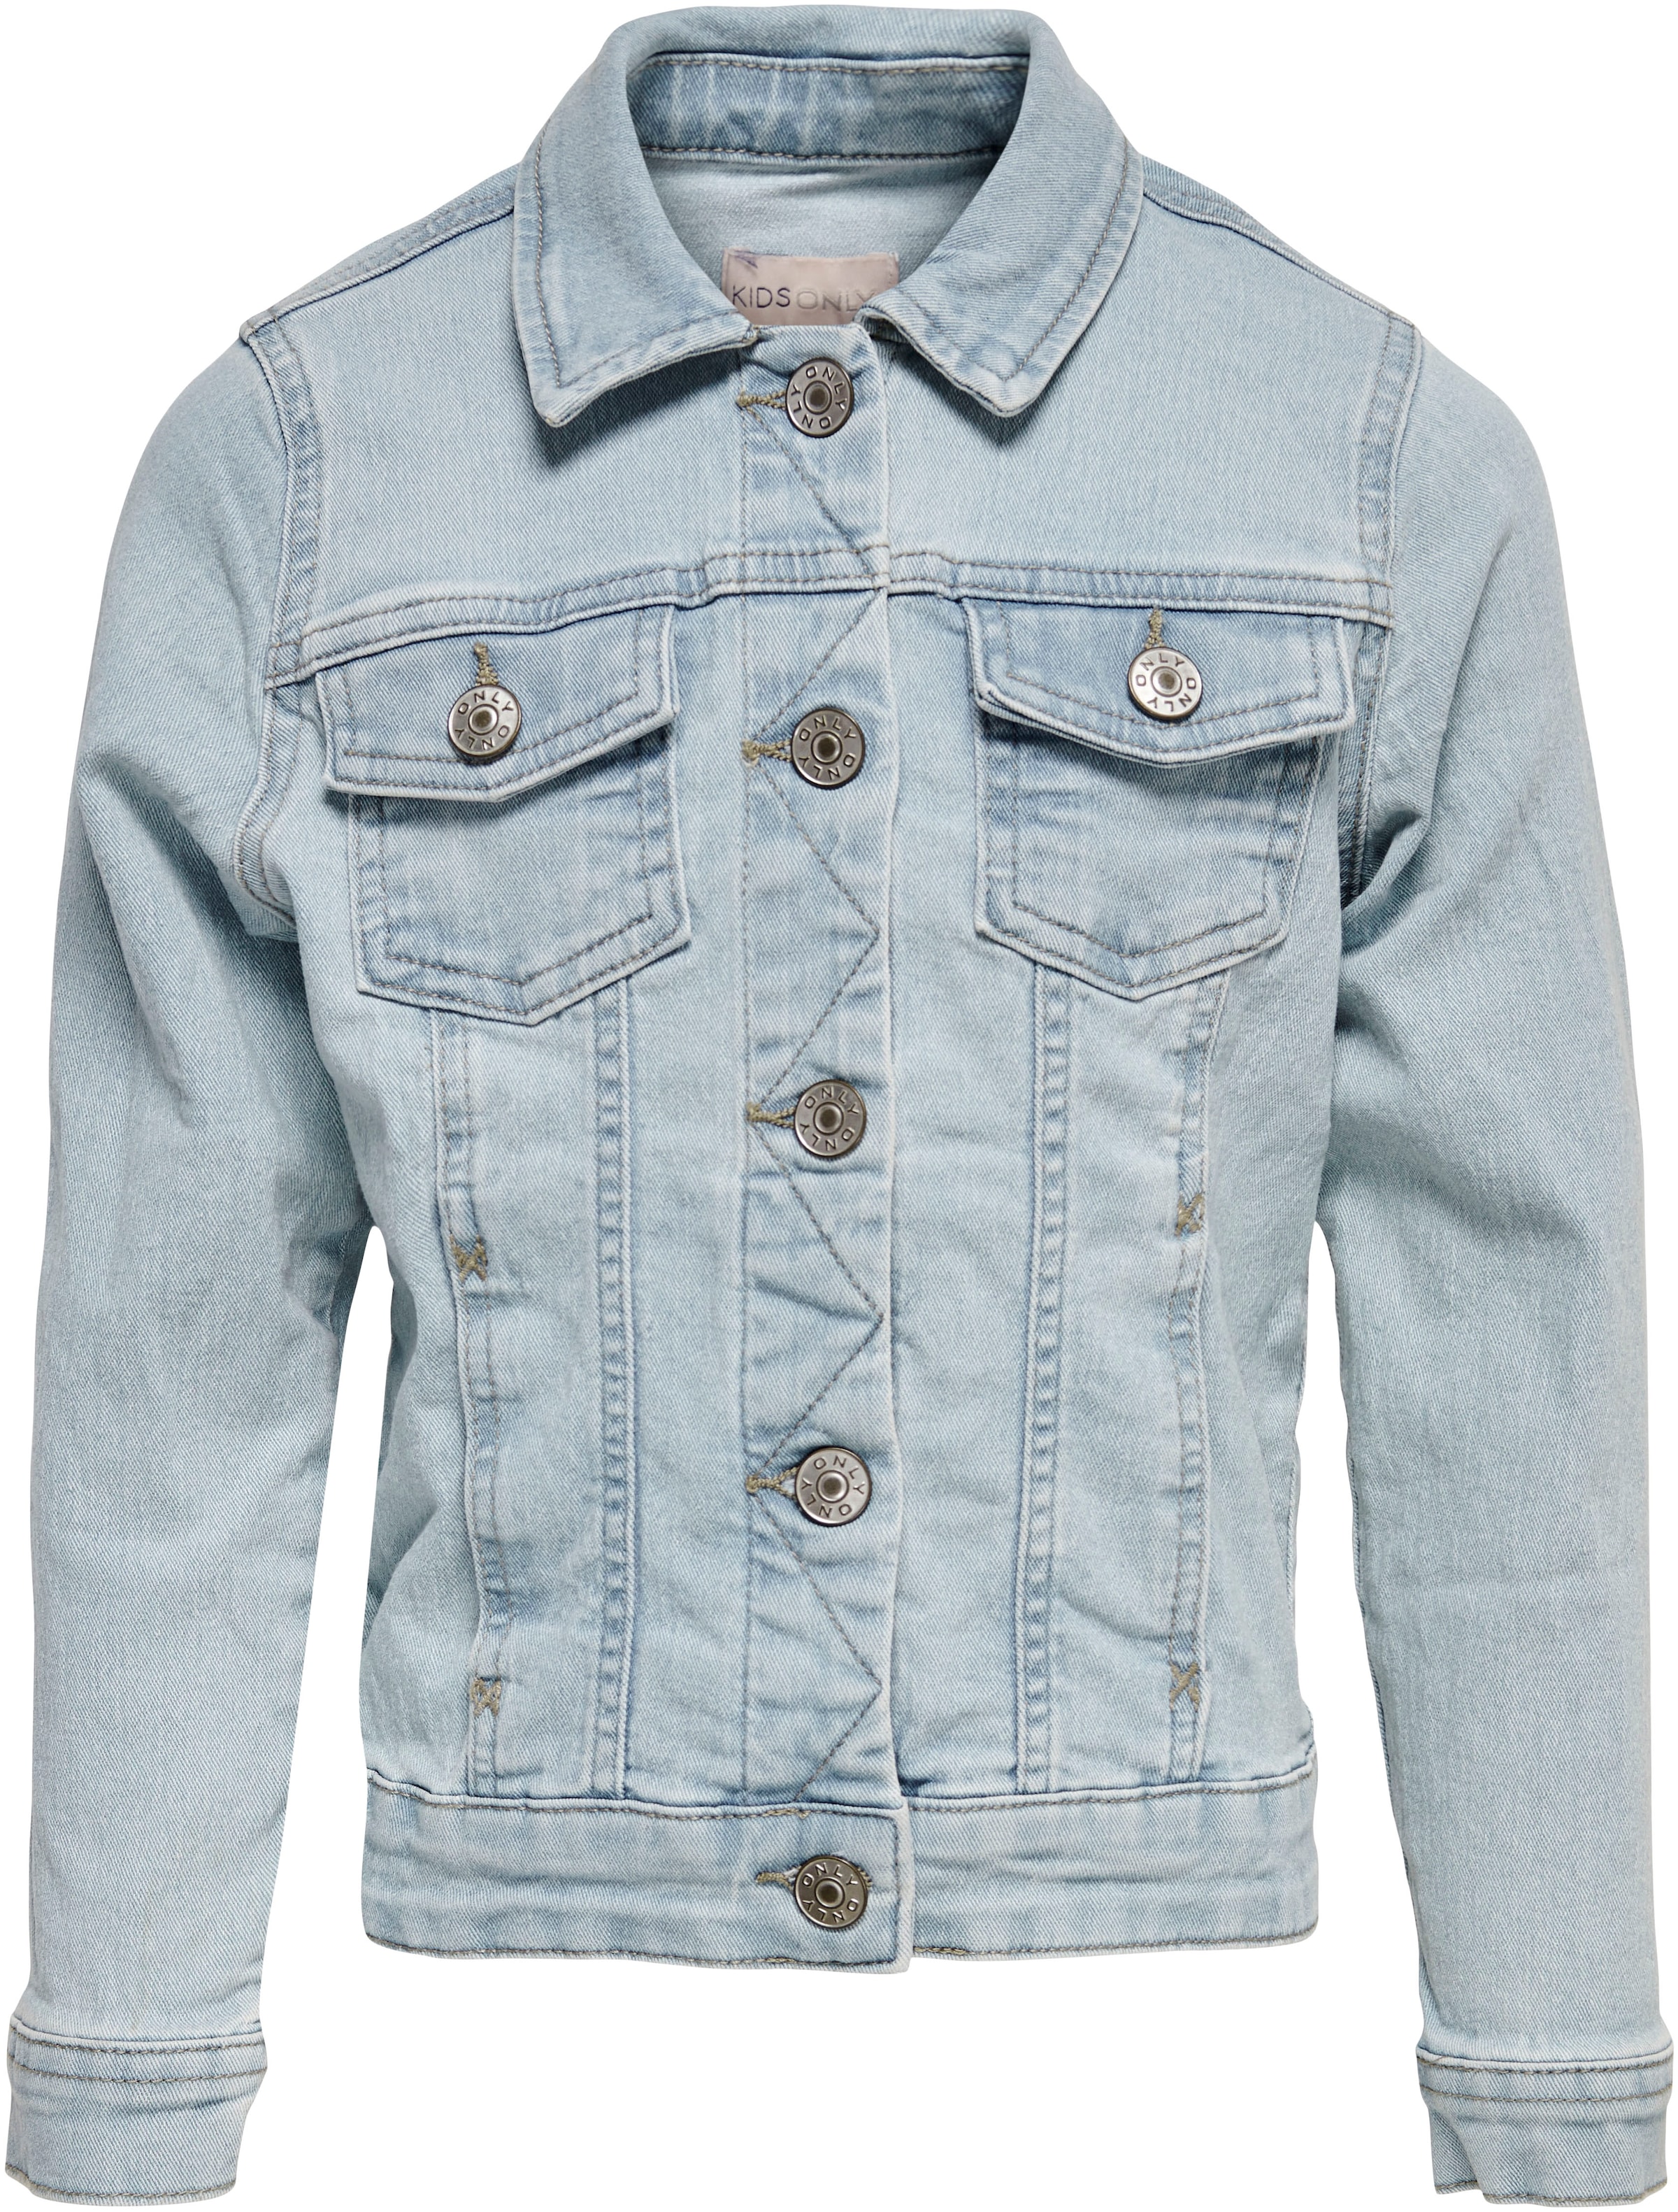 Trendige KIDS ONLY Jeansjacke ohne »KONSARA« Mindestbestellwert shoppen